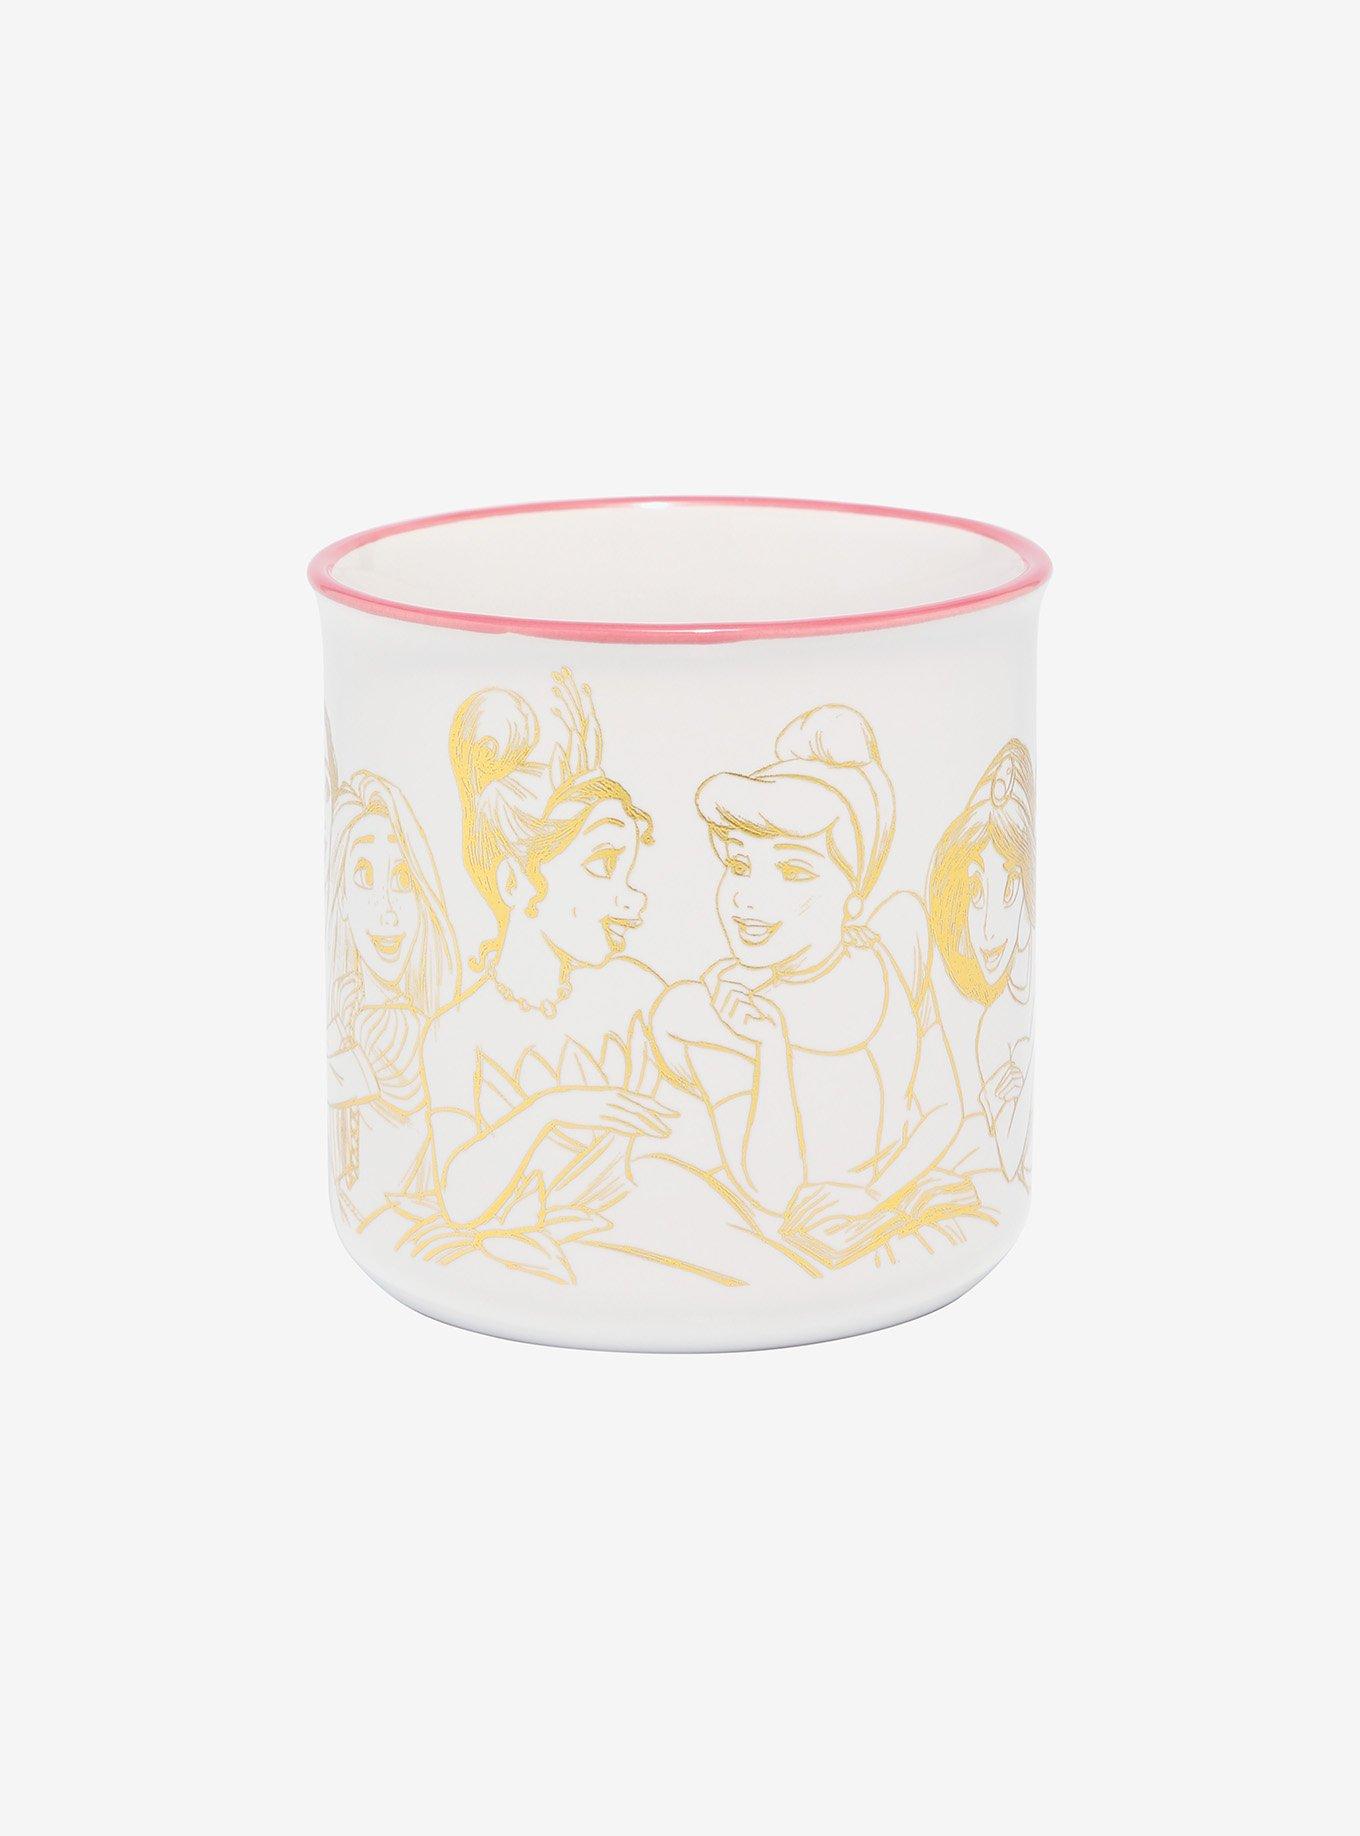 Disney Princesses Group Gold-Etched Camper Mug, , alternate